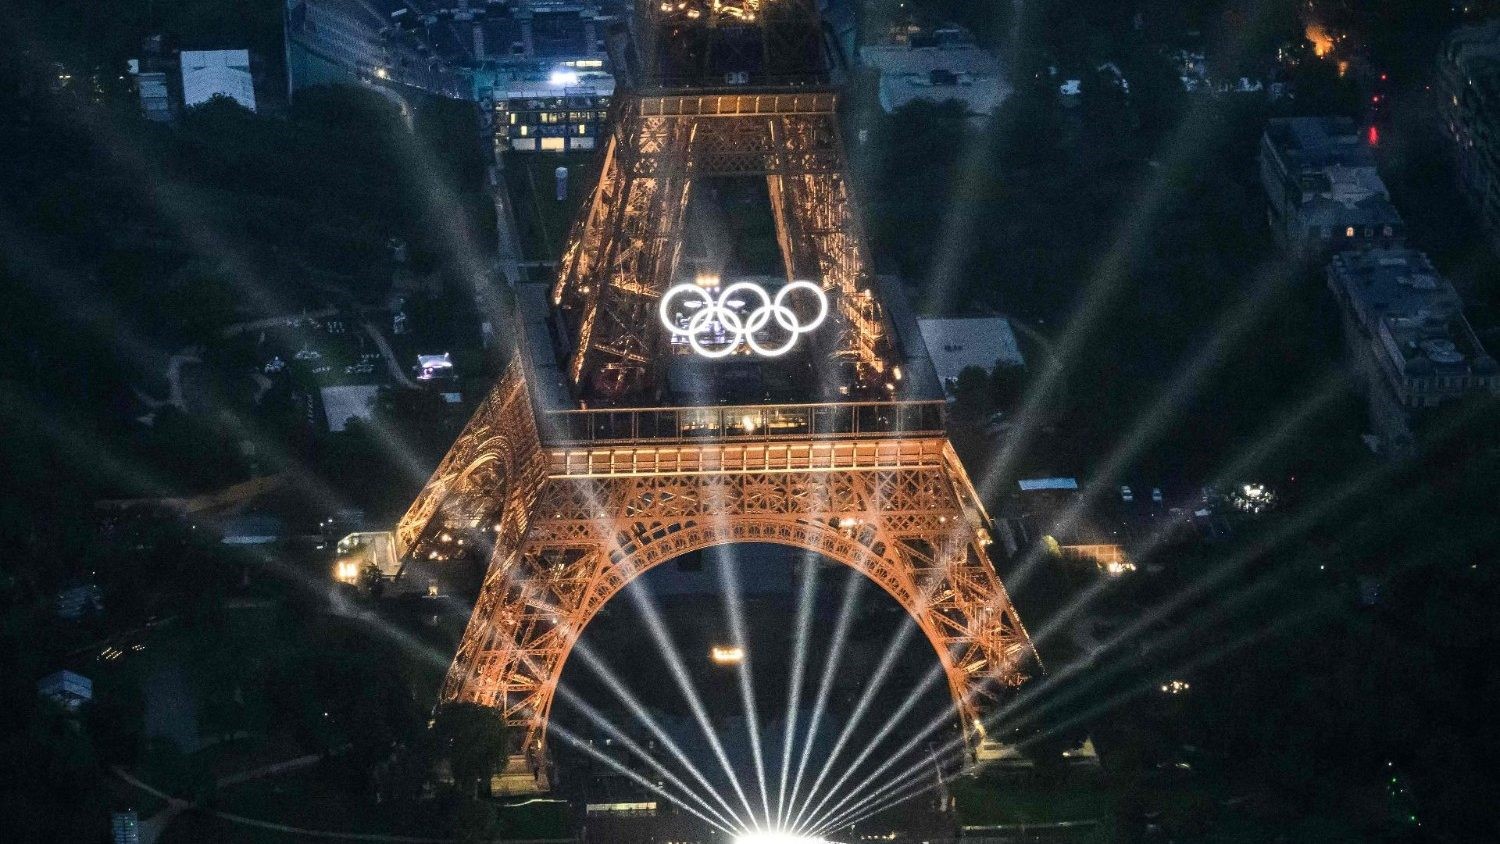 Các Giám mục Pháp lên án ‘những cảnh chế nhạo Kitô giáo’ tại Lễ khai mạc Olympic